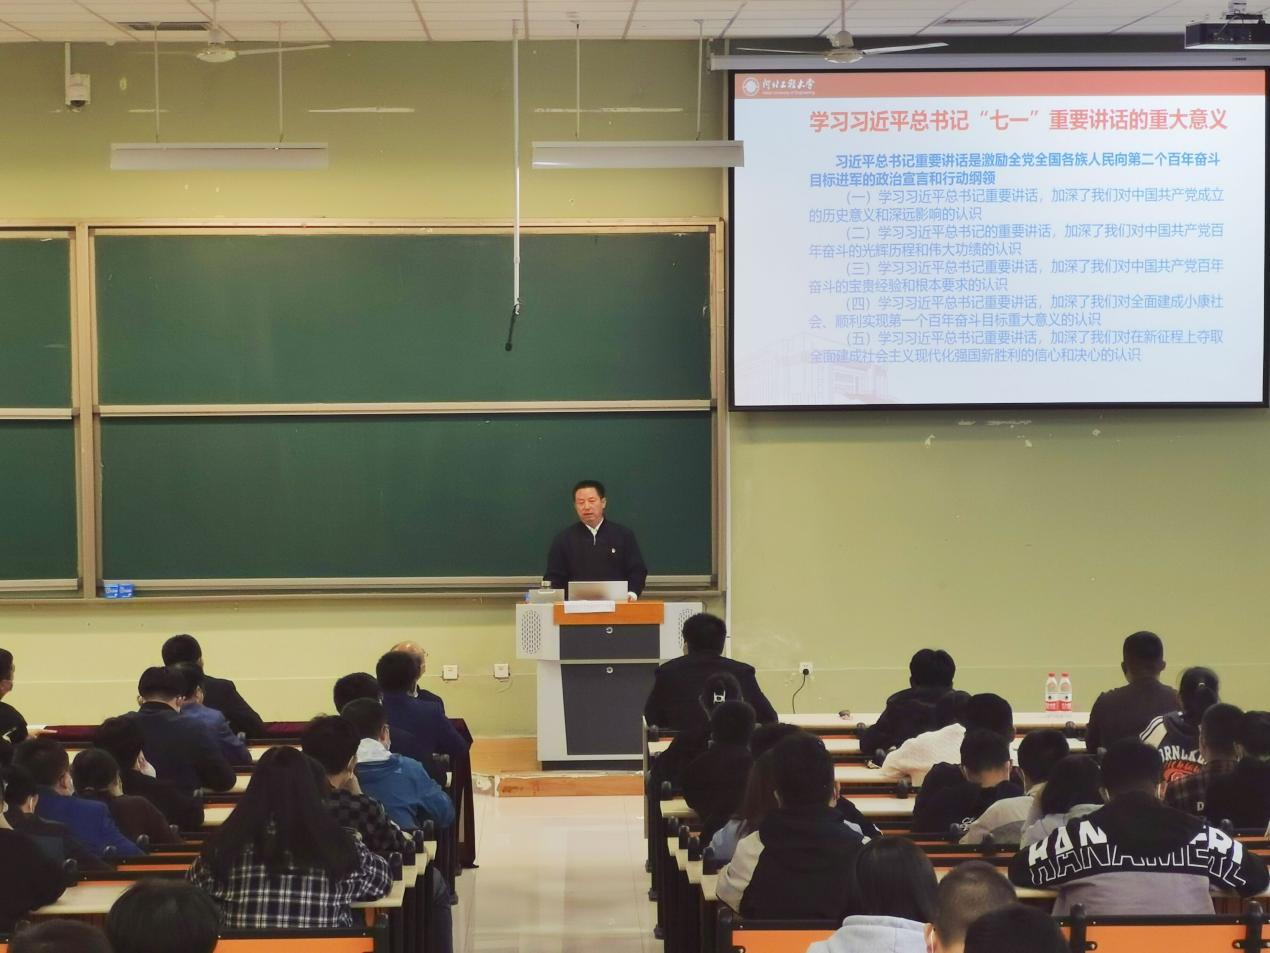 贾东水为大学生讲思想政治教育开学第一课